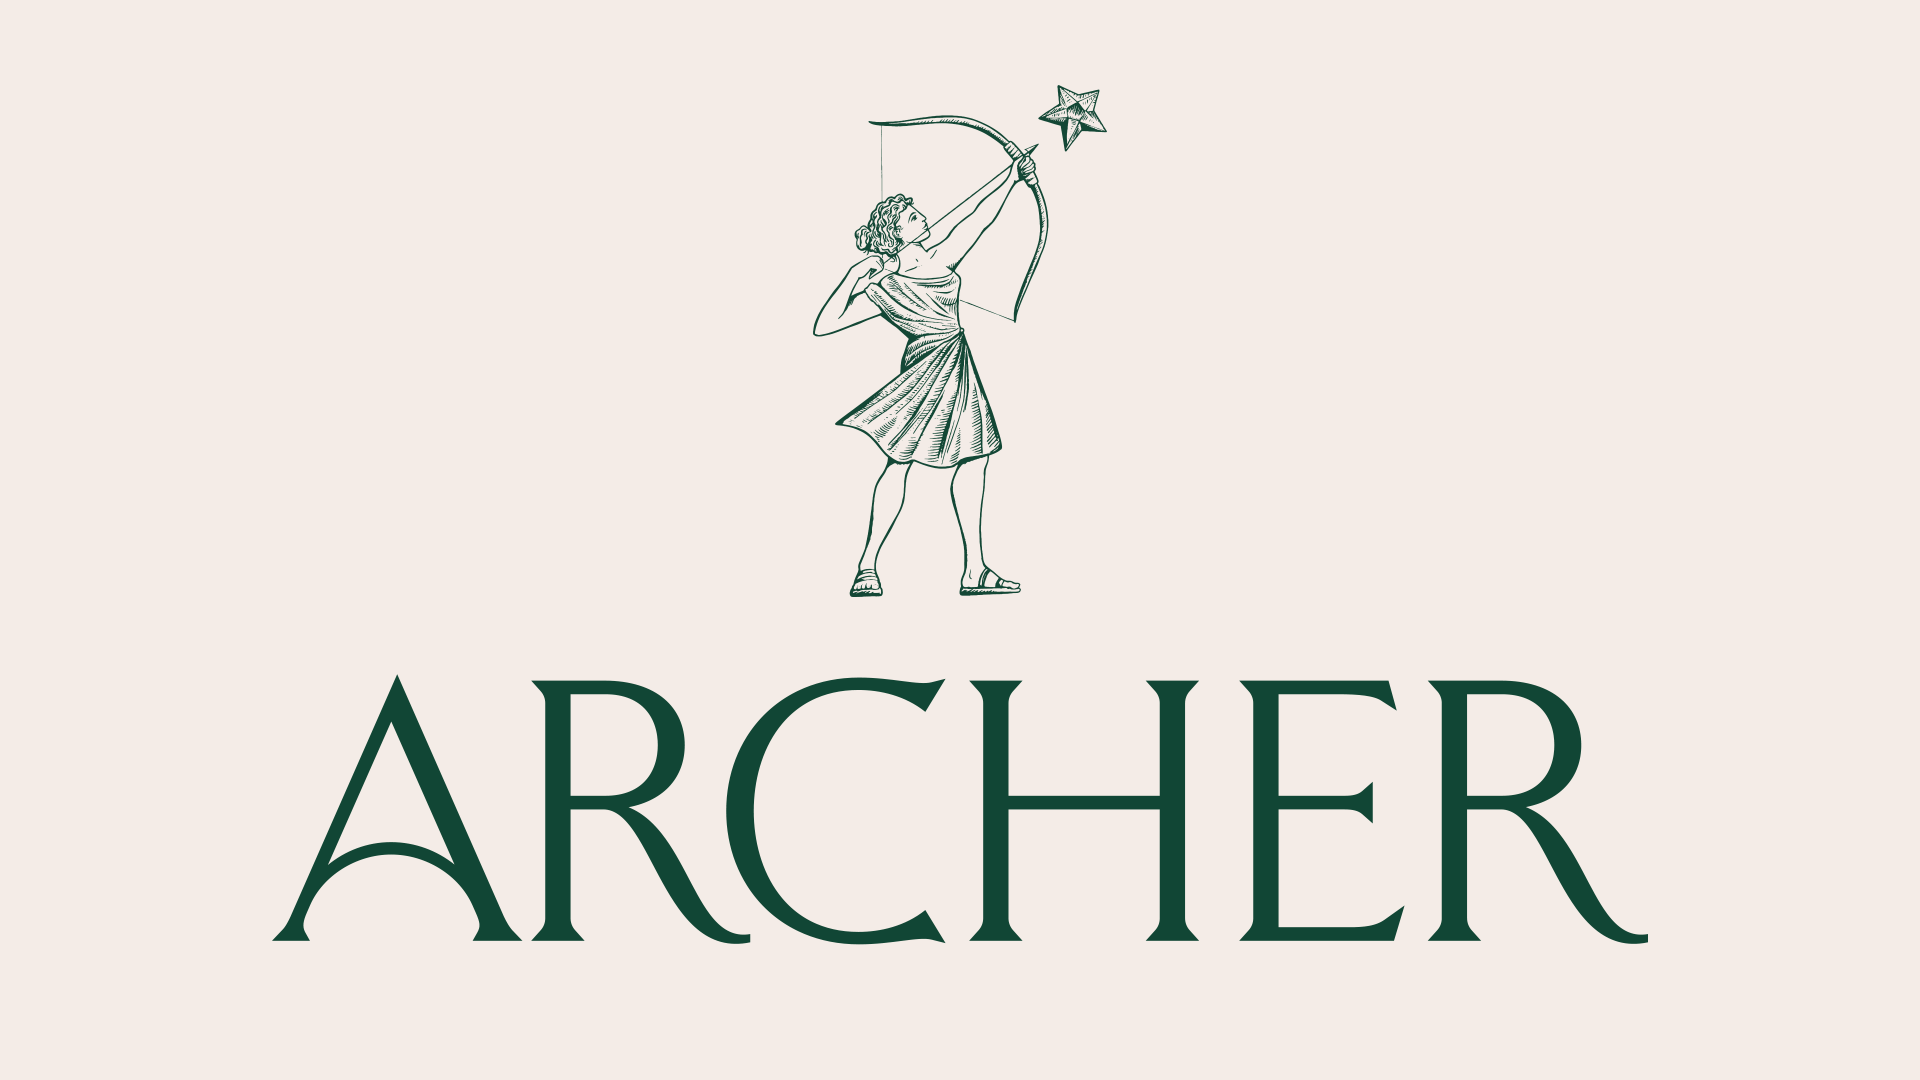 Archer new brand identity 